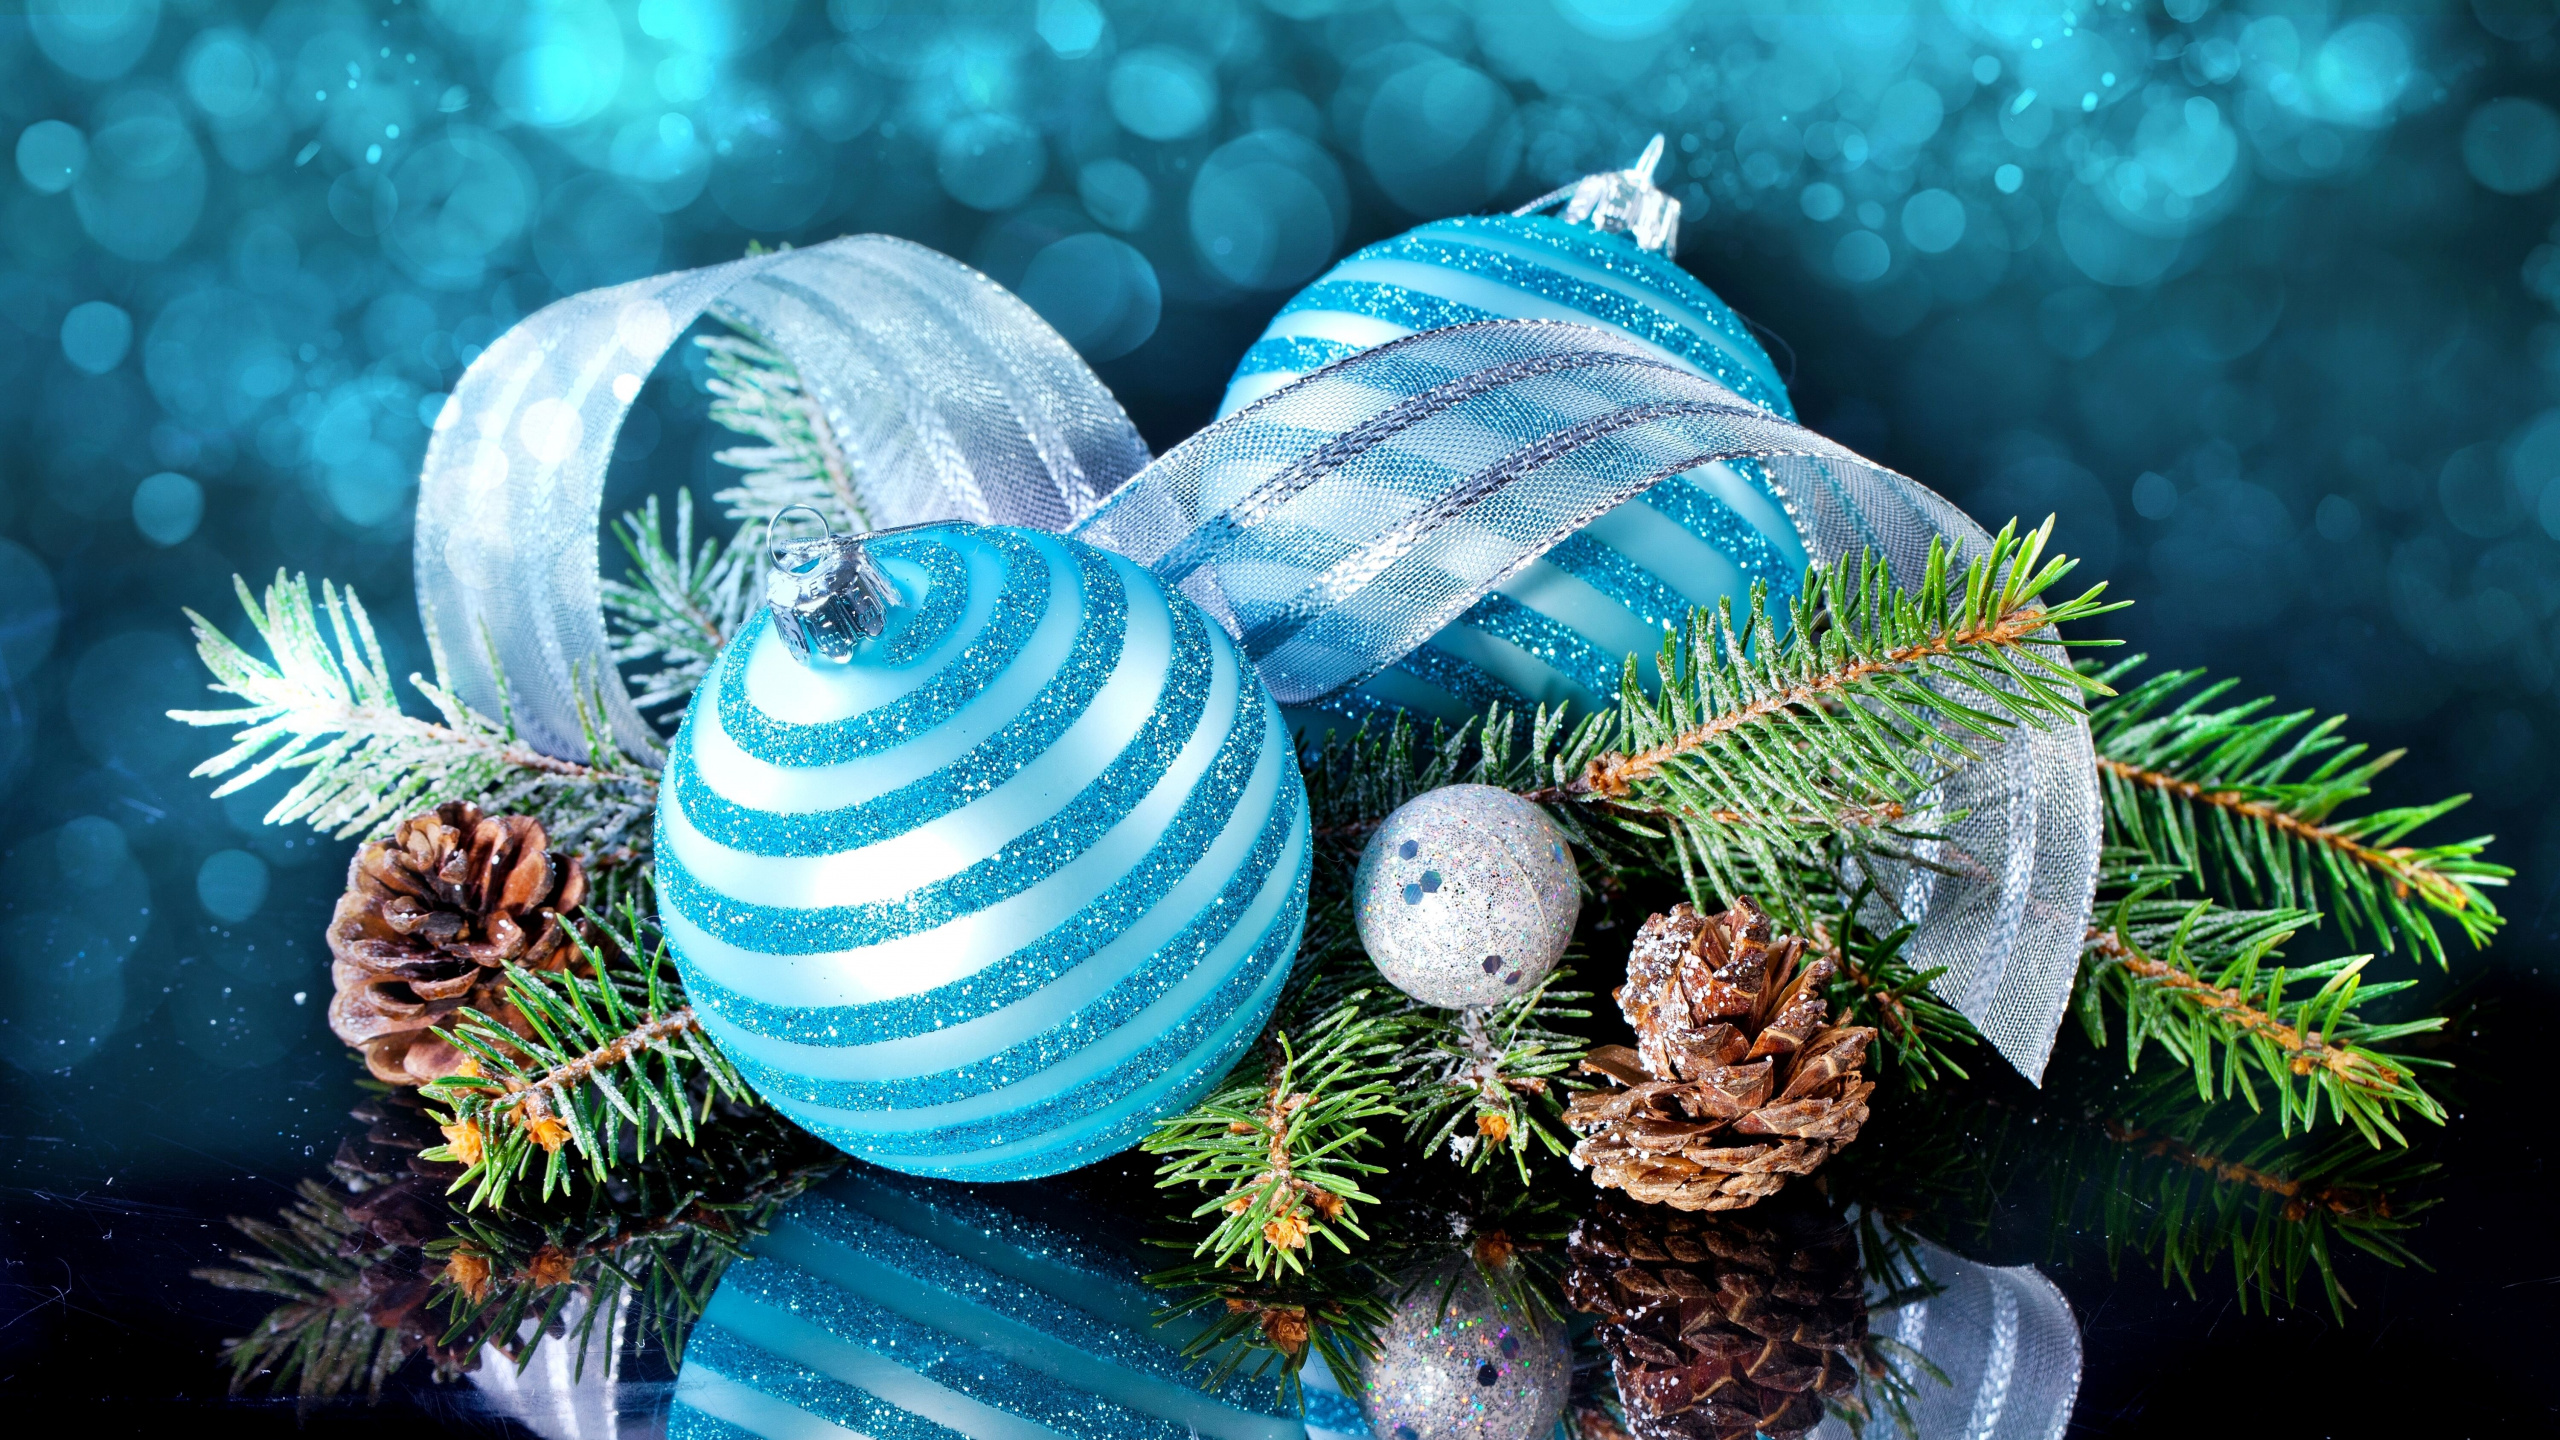 圣诞节那天, 圣诞装饰, 新的一年, 圣诞树, 圣诞节的装饰品 壁纸 2560x1440 允许